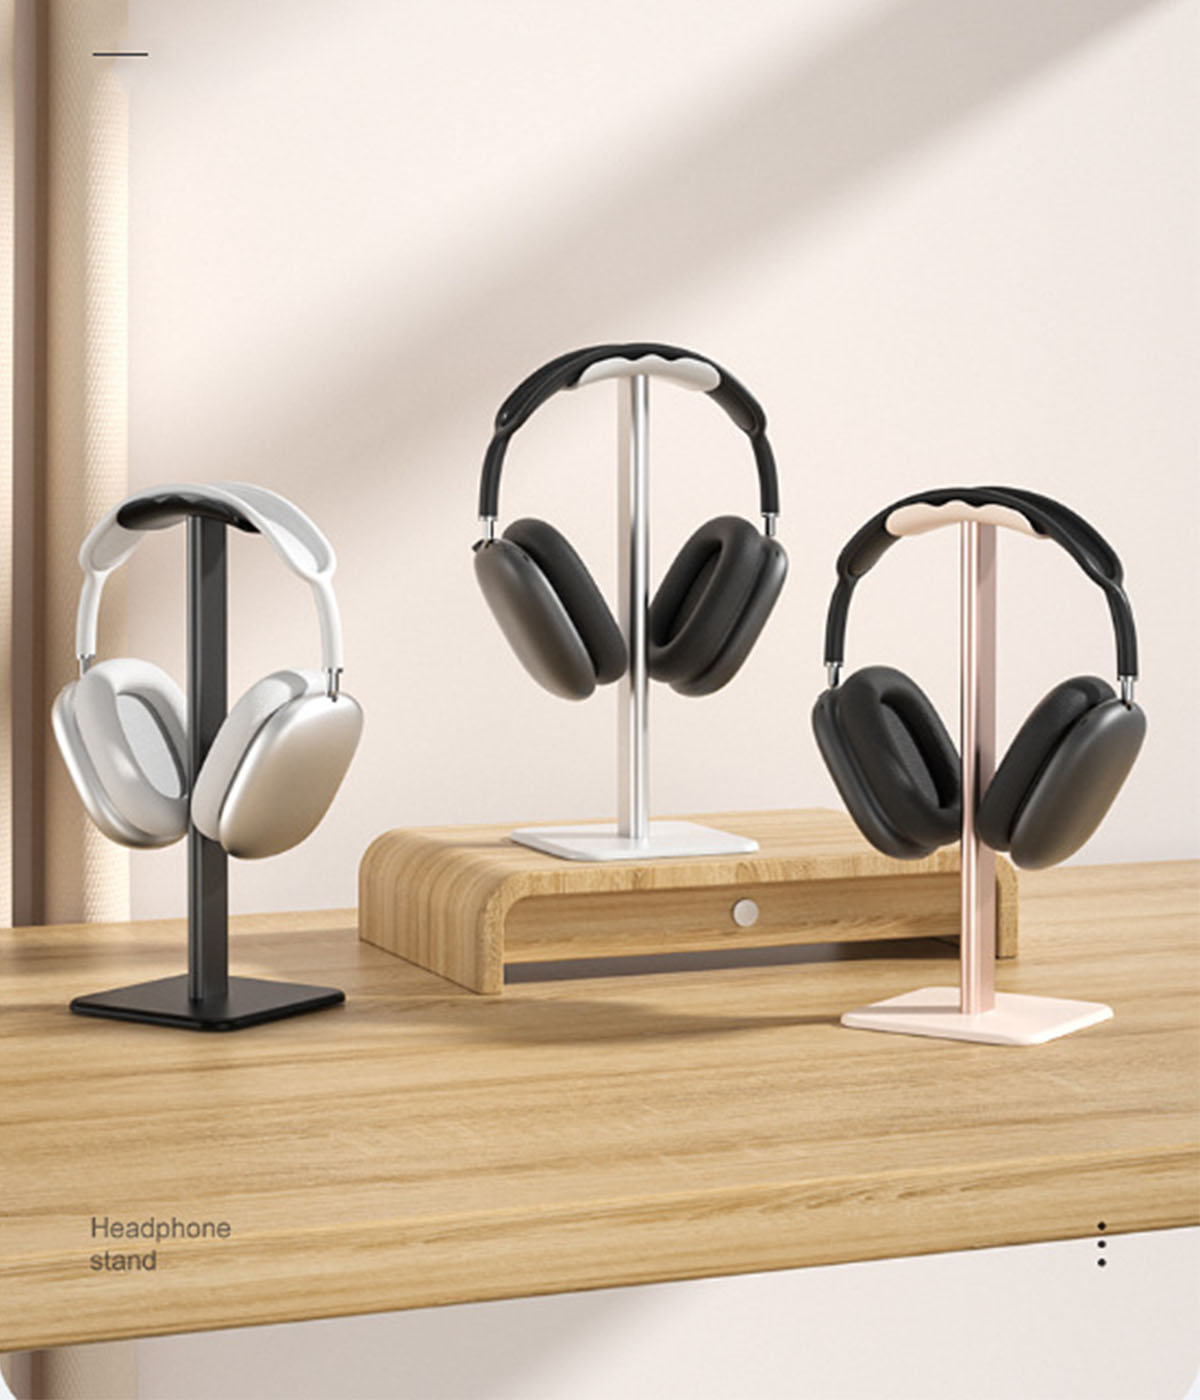 BRIGHTAKE Aluminiumlegierung Kopfhörerständer: für Kopfhörer-Ständer Kopfhörer Halt Platzsparender Ihre